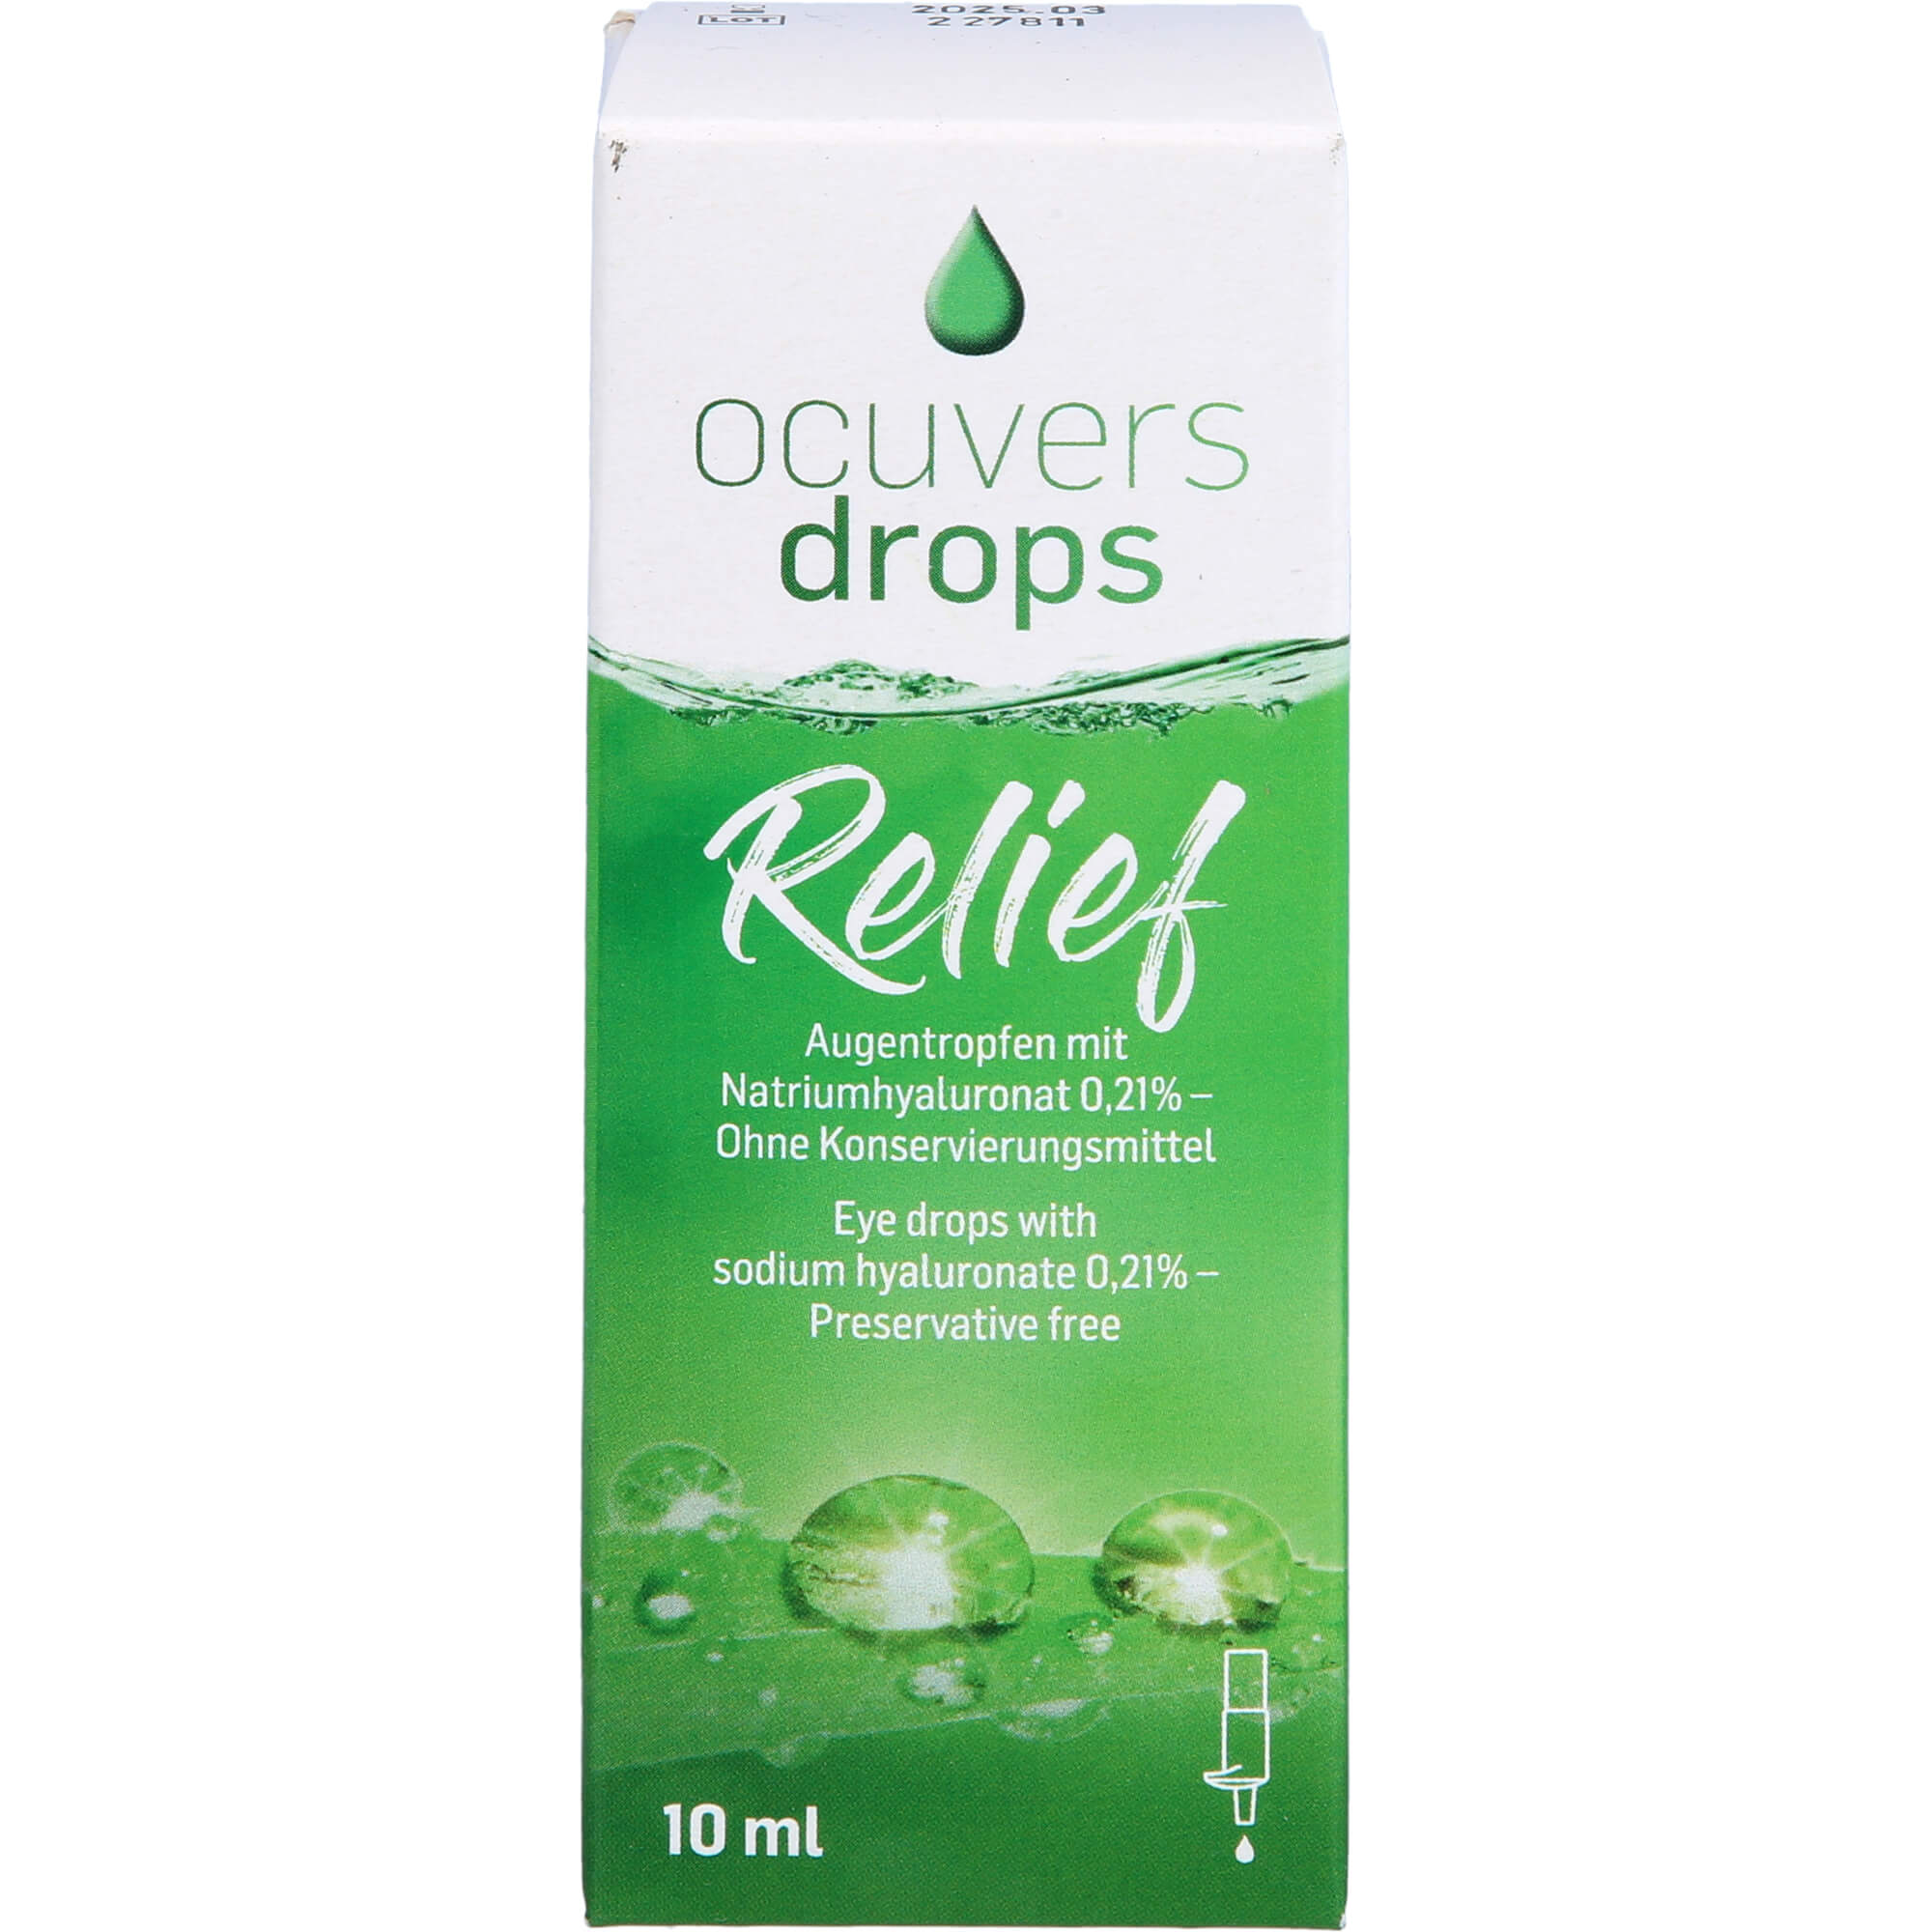 OCUVERS drops Relief Augentropfen